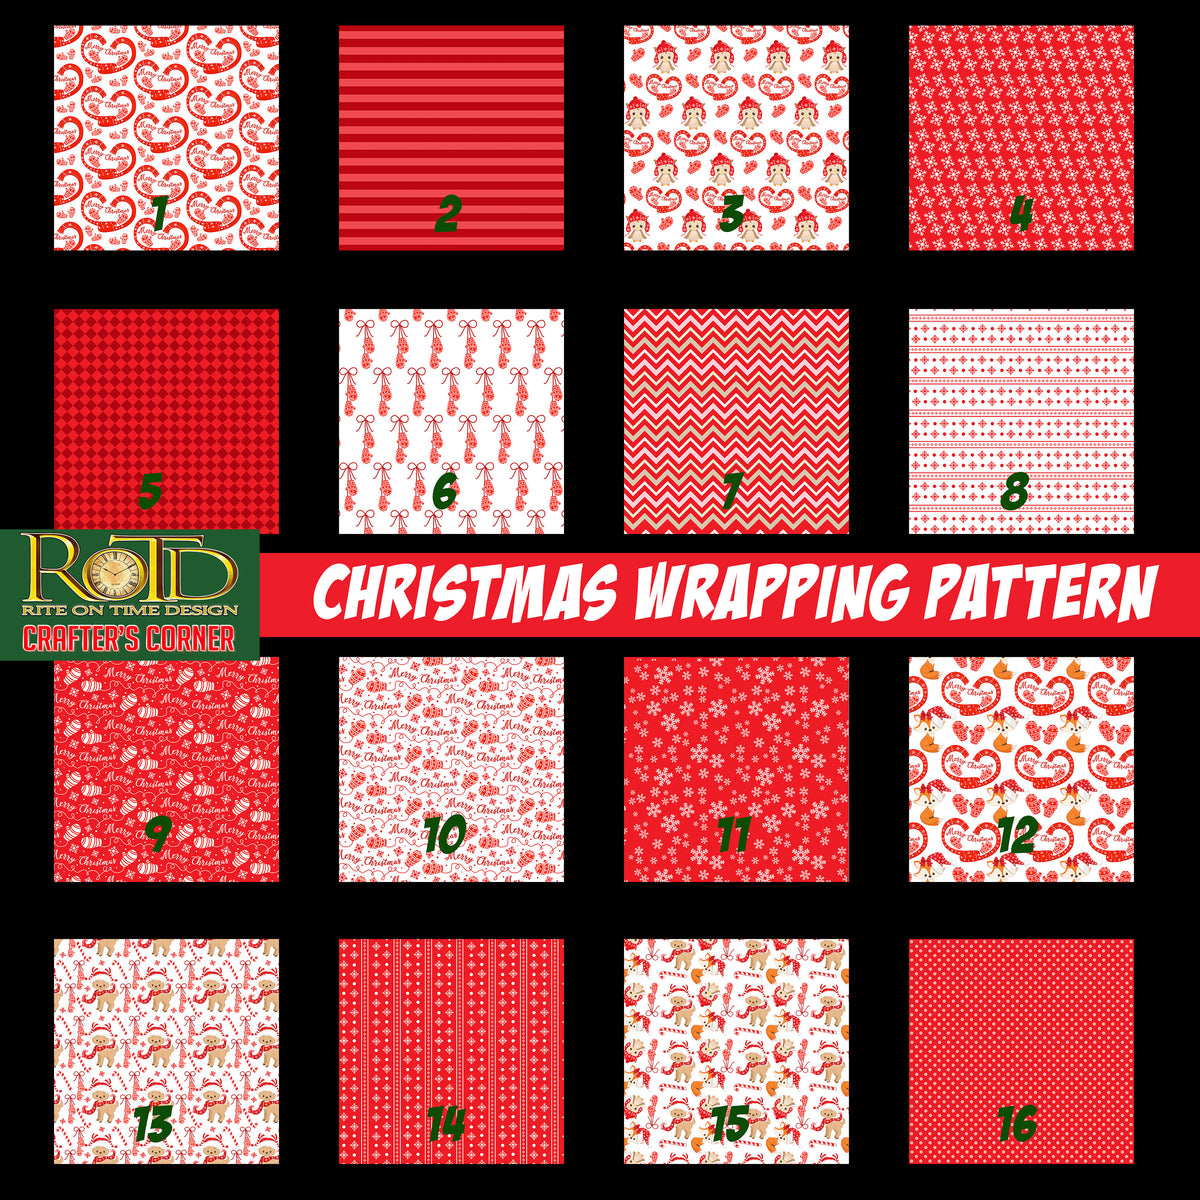 Christmas wrapping pattern craft vinyl, pattern vinyl, outdoor vinyl, vinyl sheets, heat transfer vinyl, adhesive vinyl, patterned vinyl